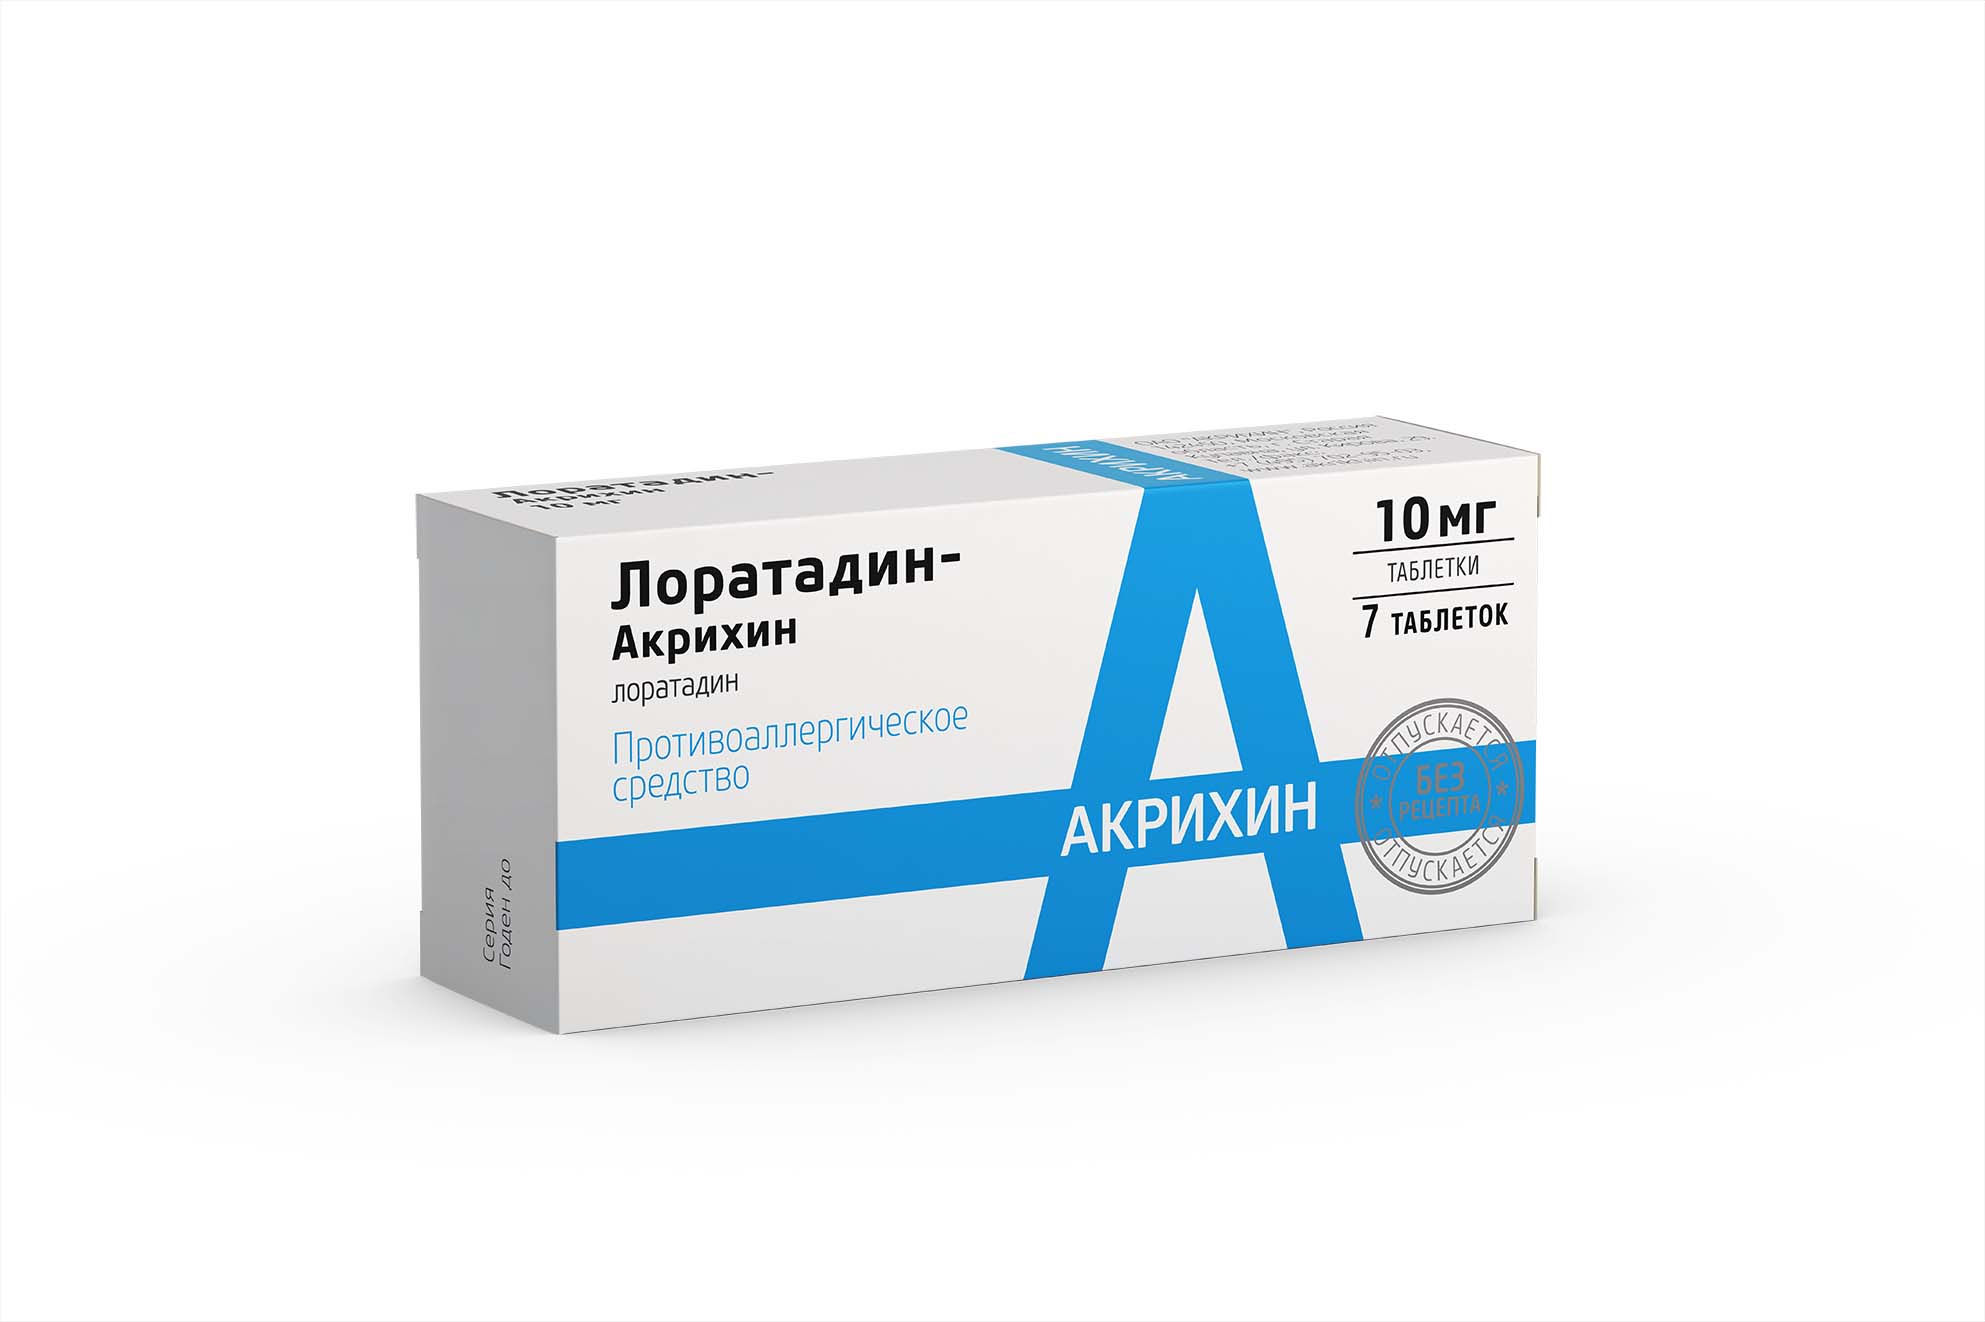 Лоратадин-Акрихин таблетки 10 мг 7 шт лоратадин тева таб 10мг 10